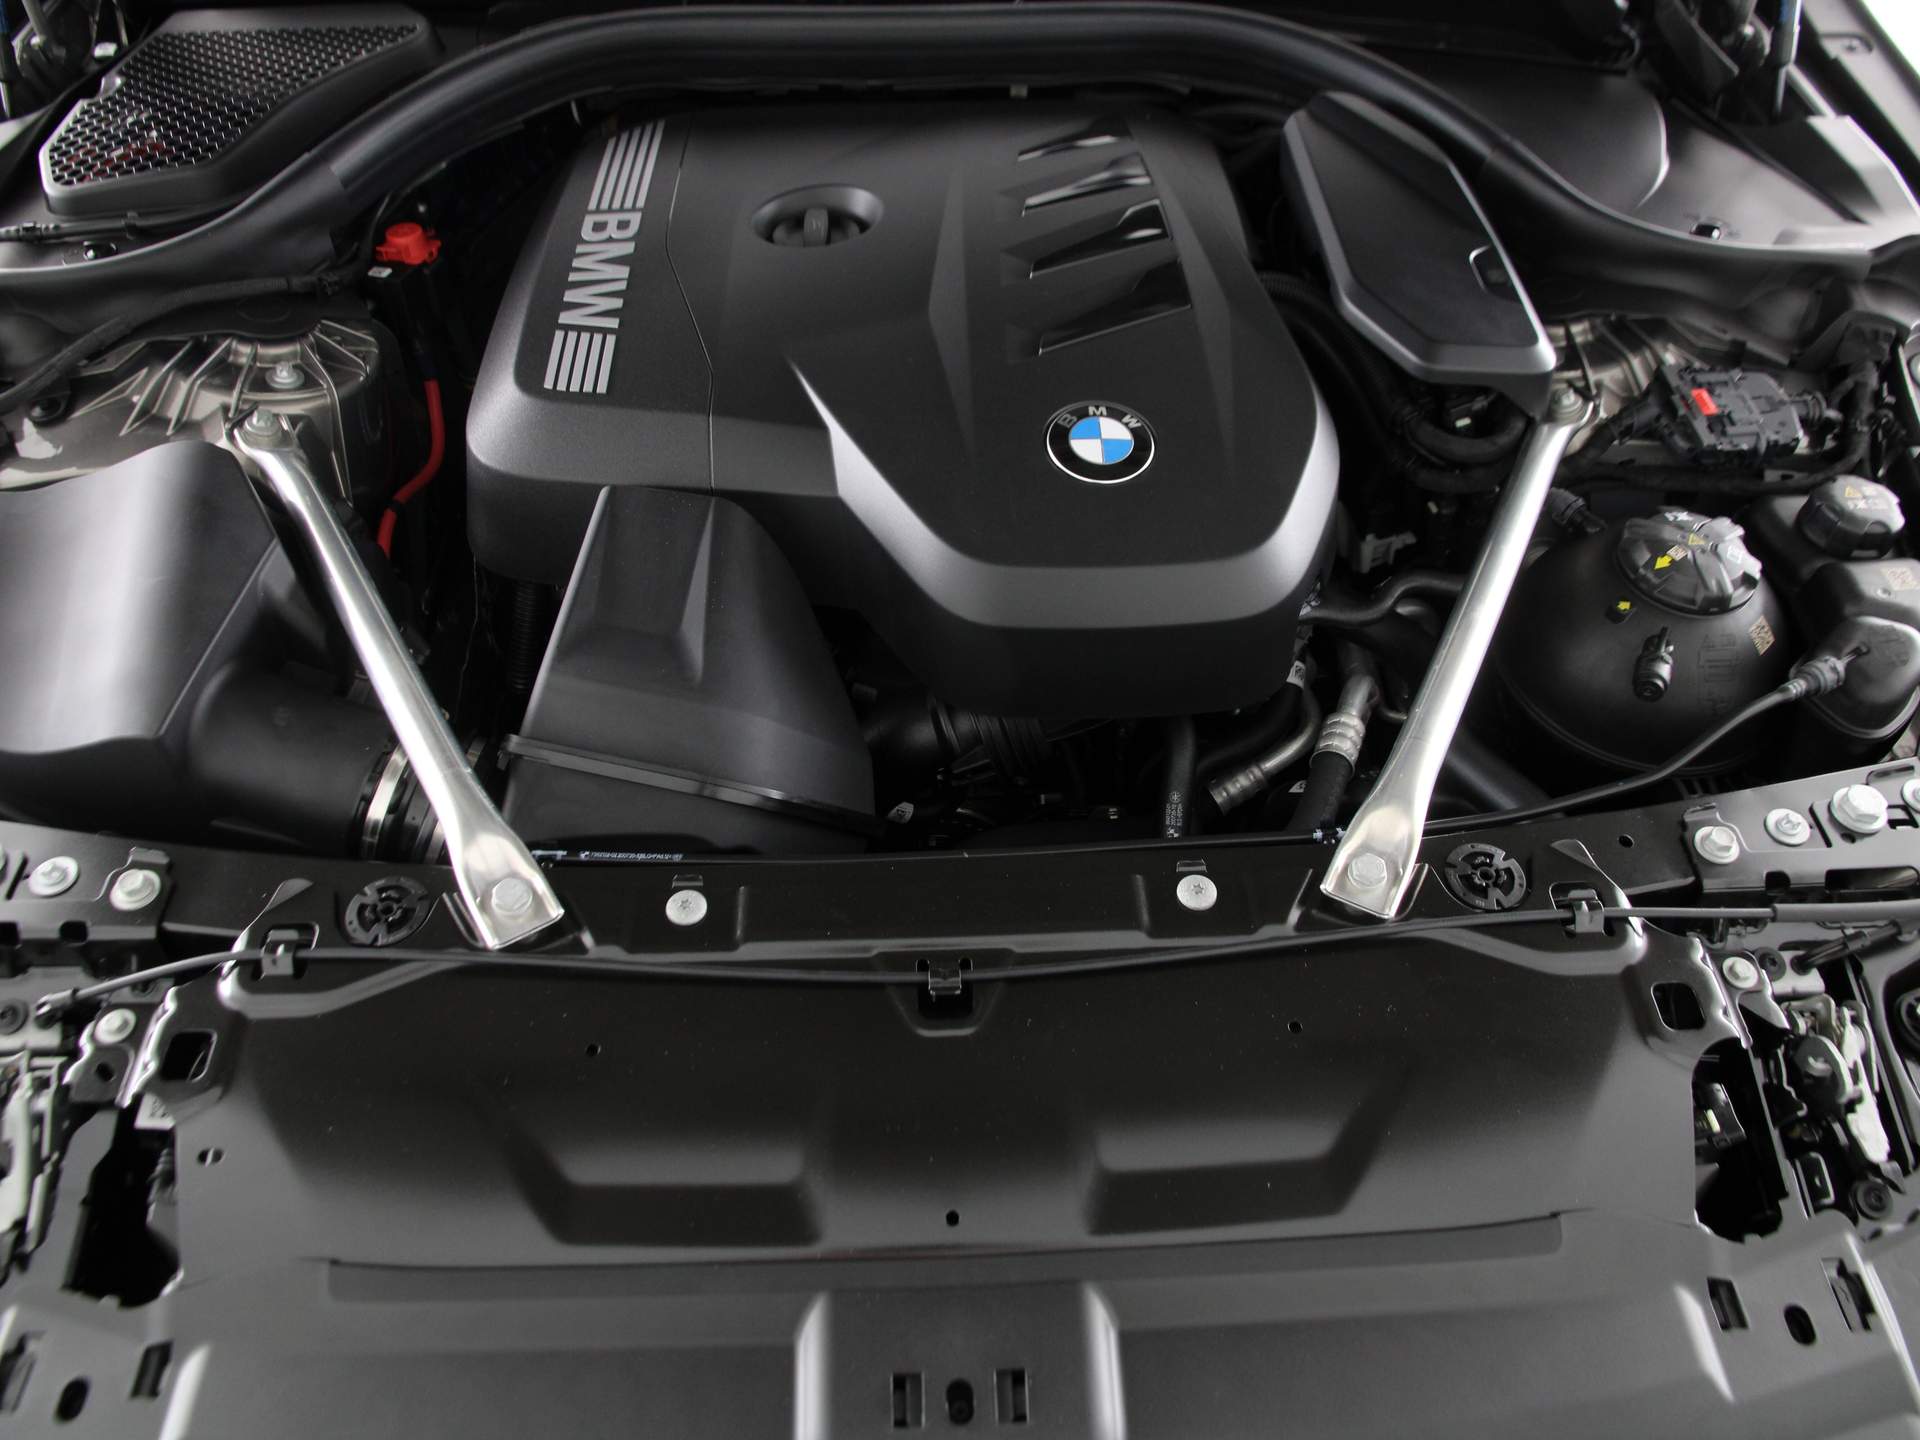 BMW 5 Serie